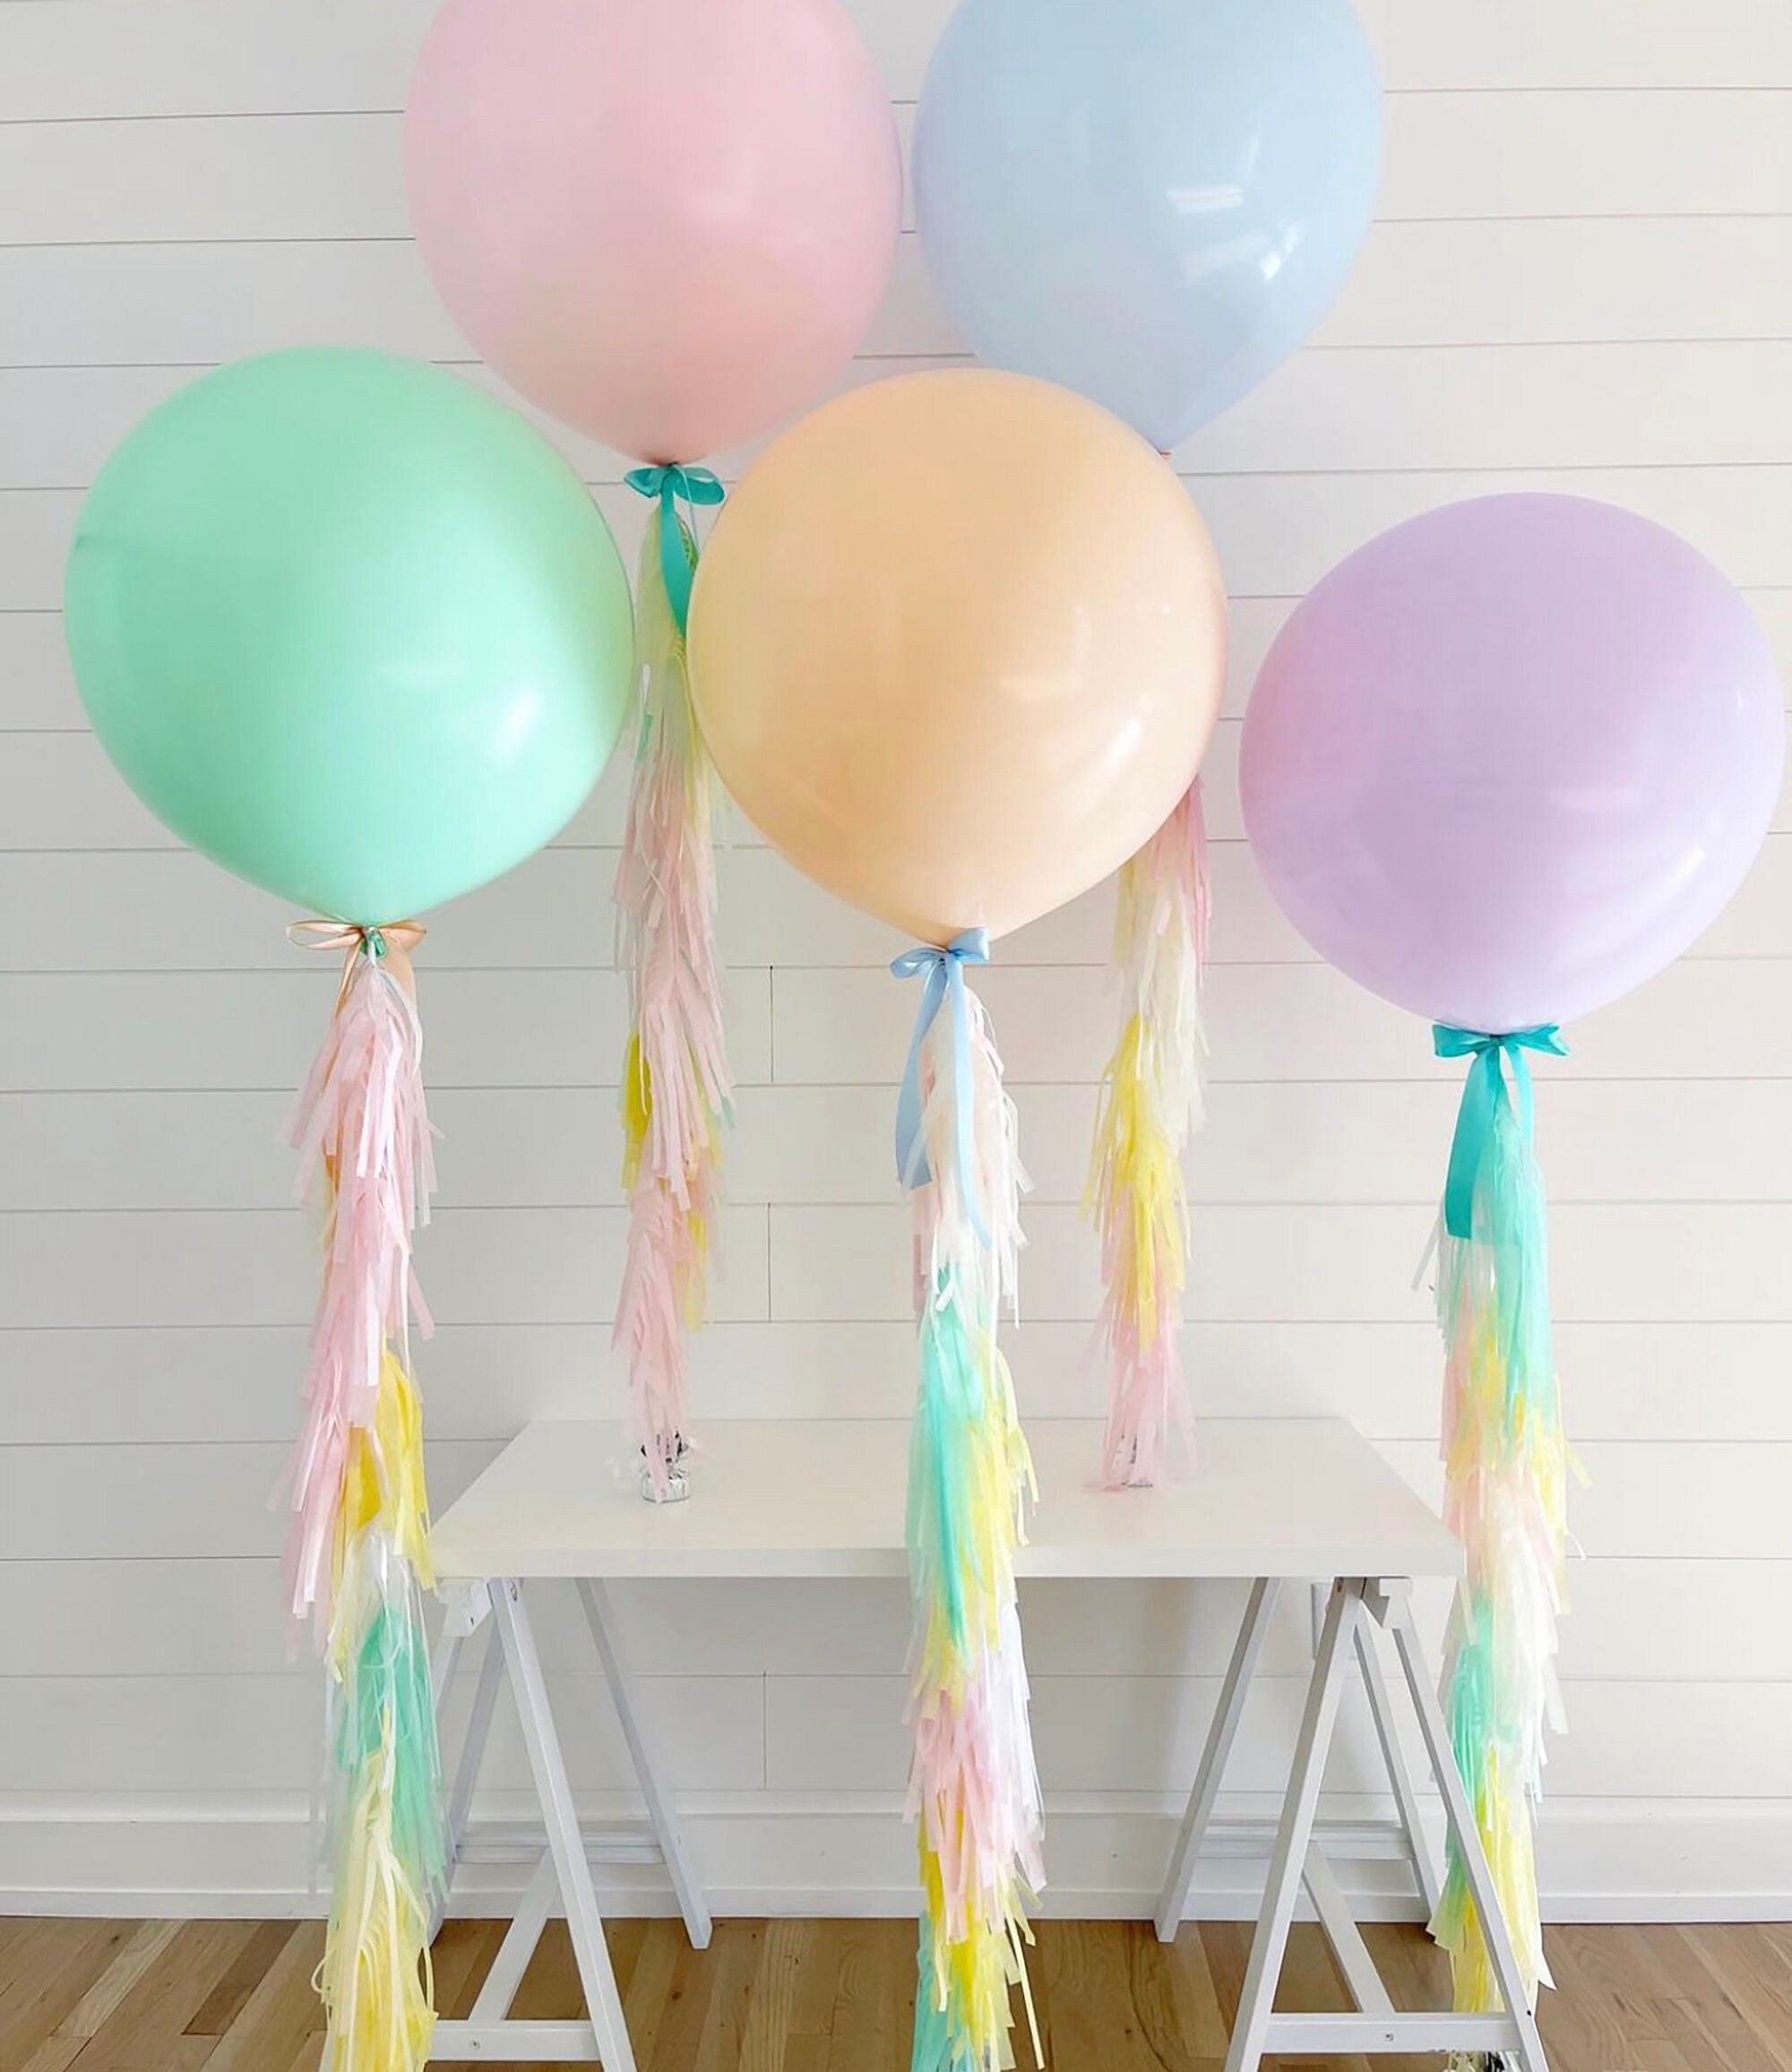 Jumbo Balloon & Tassel Tail - Pastel Rainbow